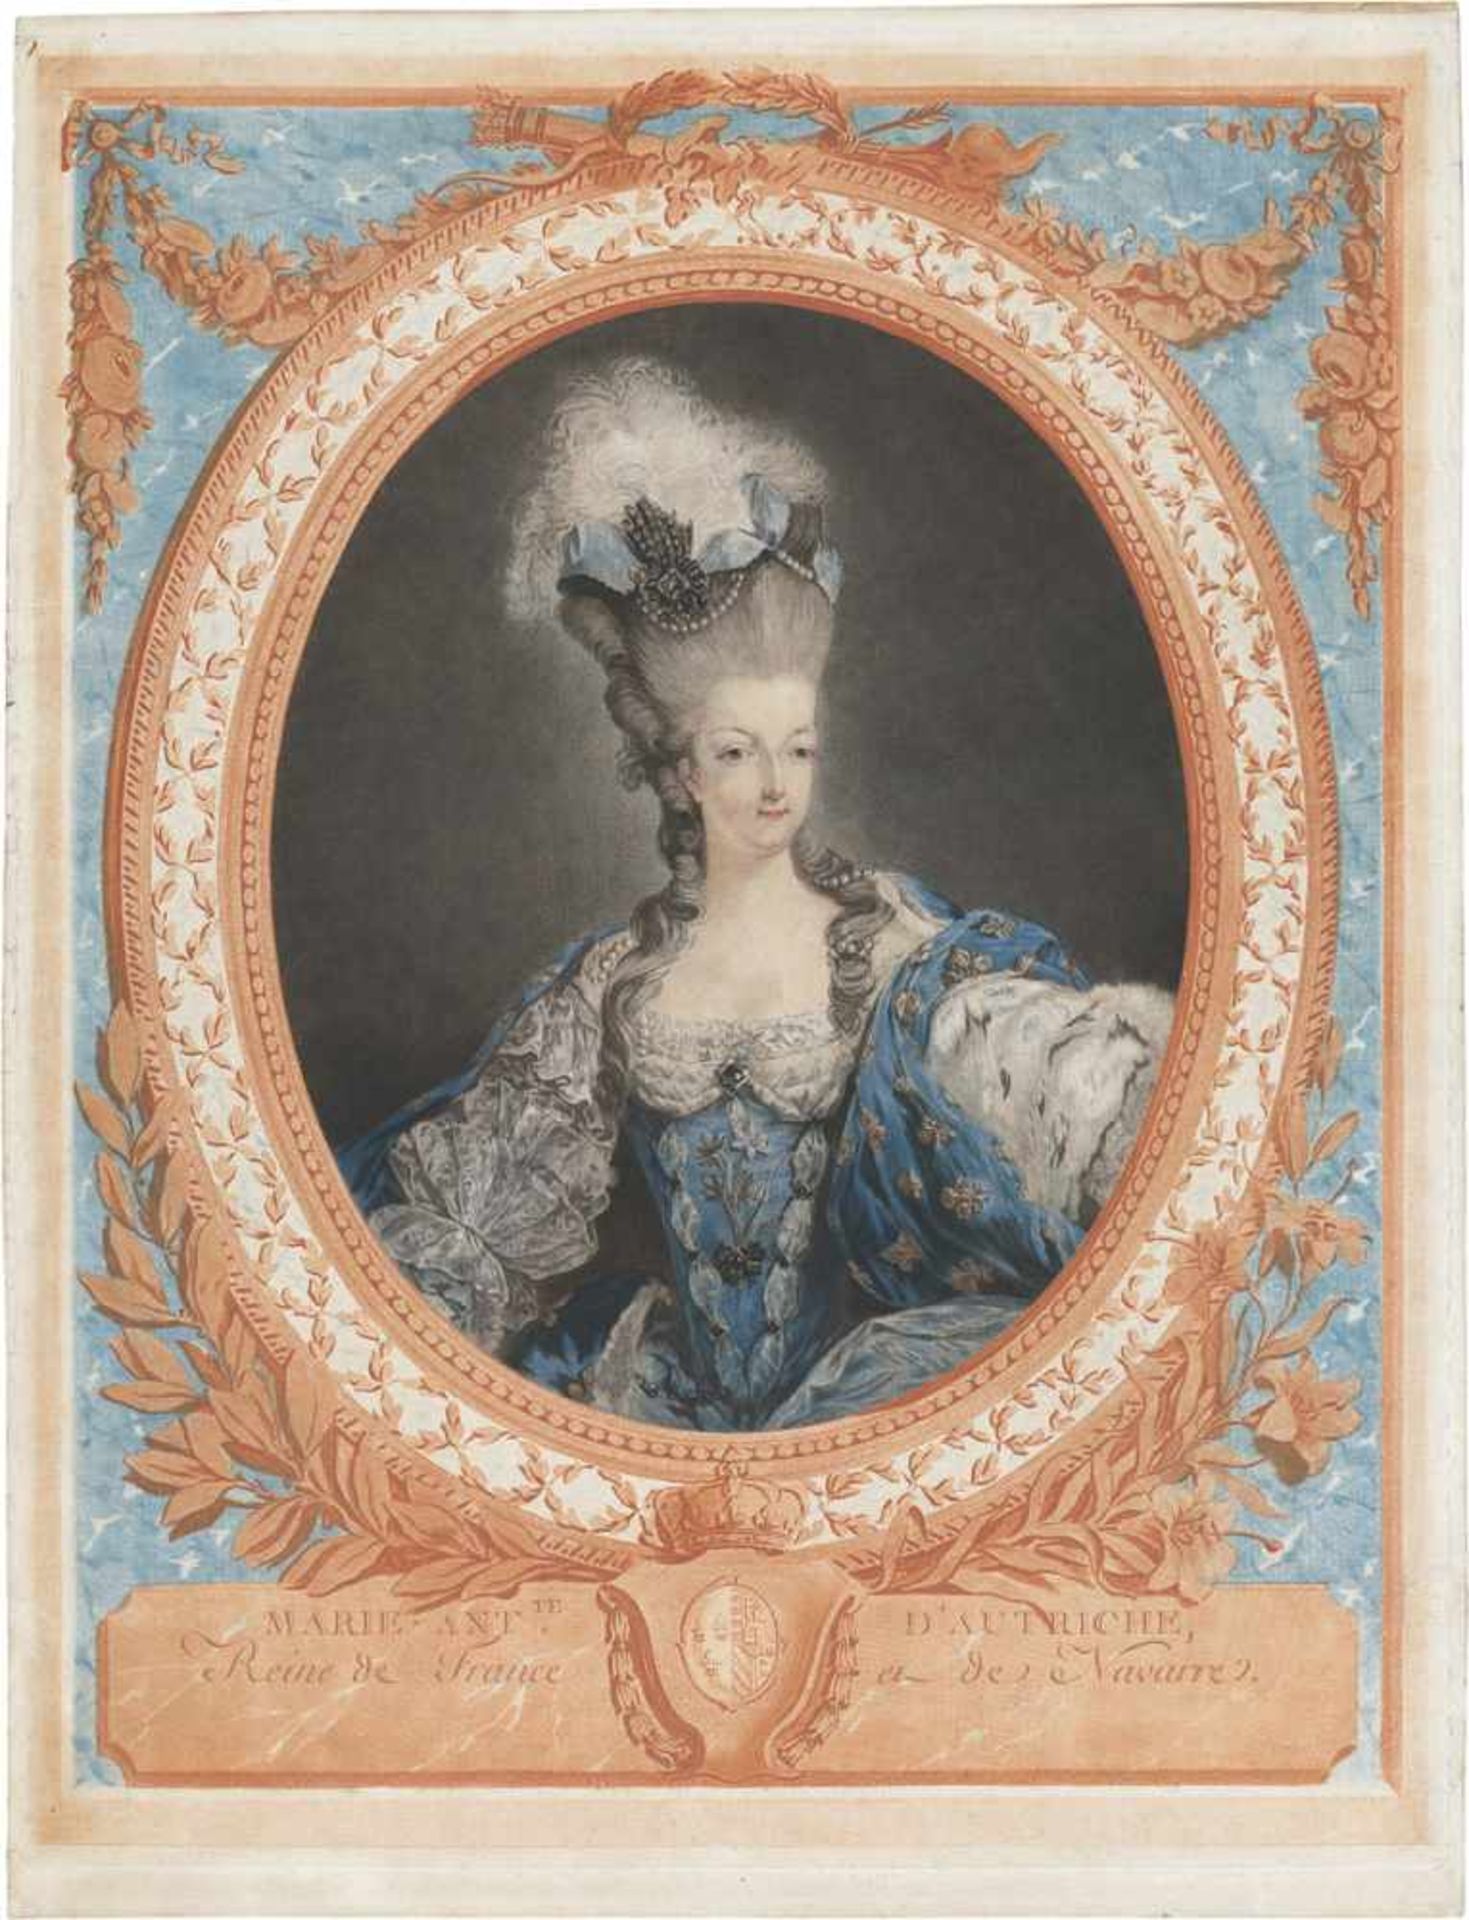 Janinet, Jean-François: Marie-Antoinette d'Autriche, Reine de France et de NavarreMarie-Antoinette